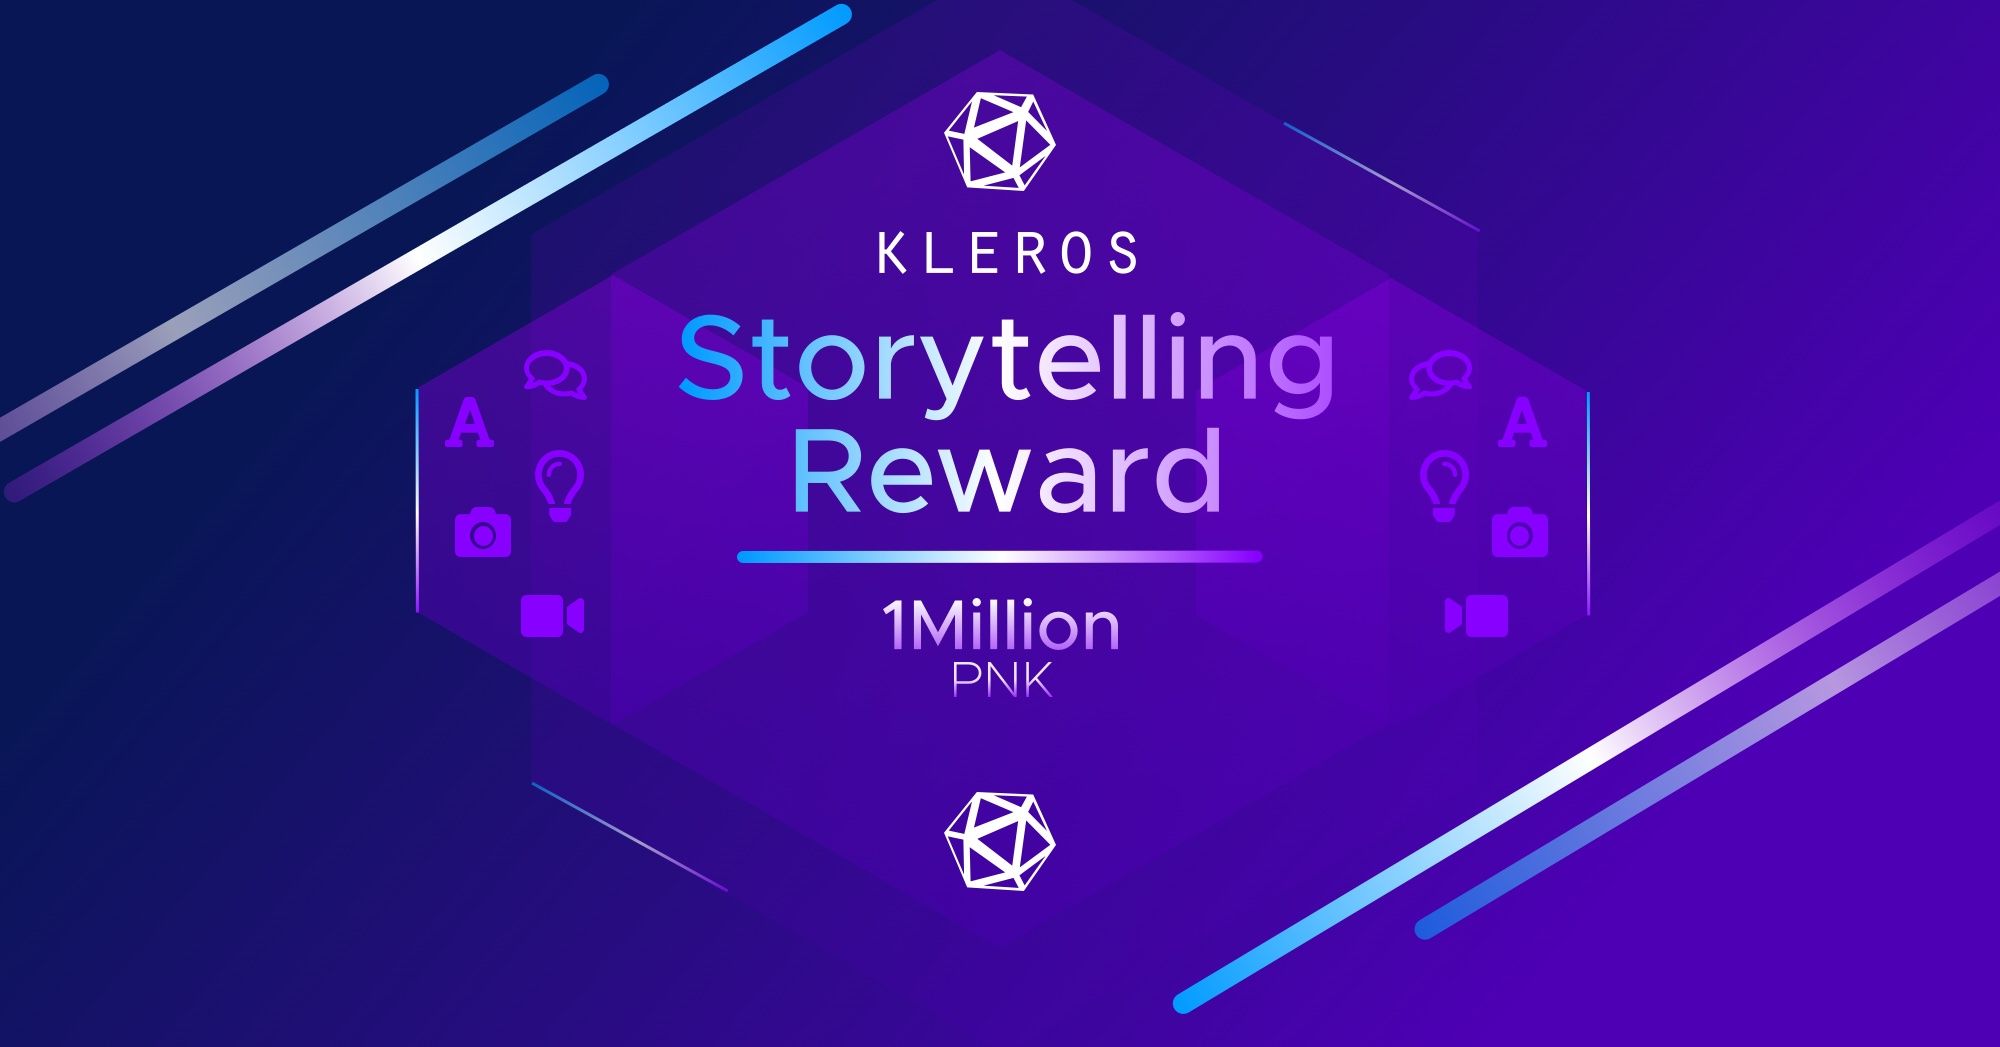 Kleros Storytelling Reward Program